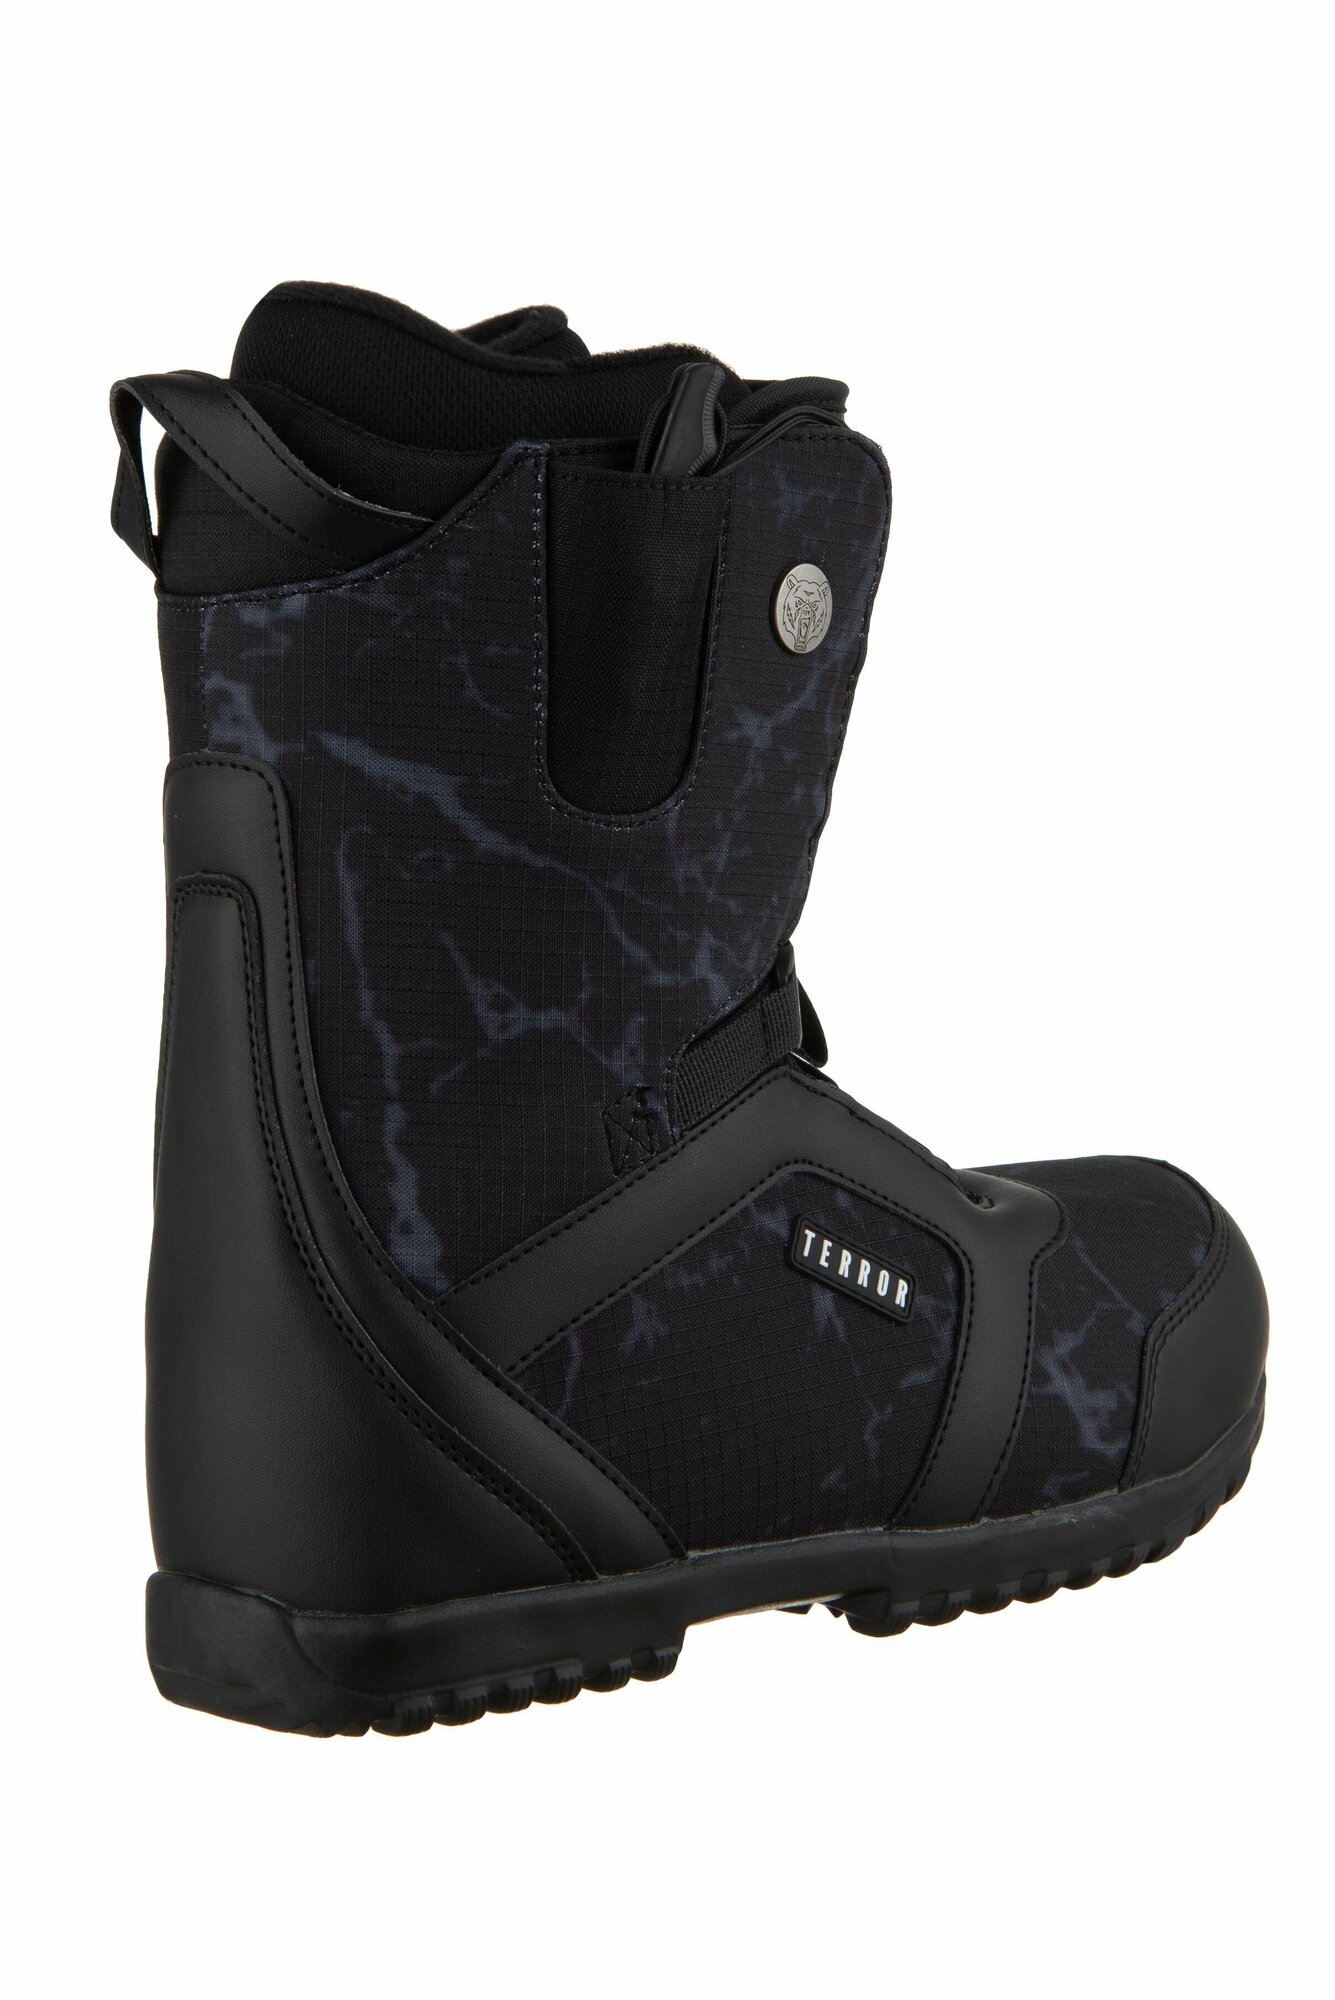 Ботинки сноубордические TERROR CREW Fastec Black (36 RU / 23,5 cm)